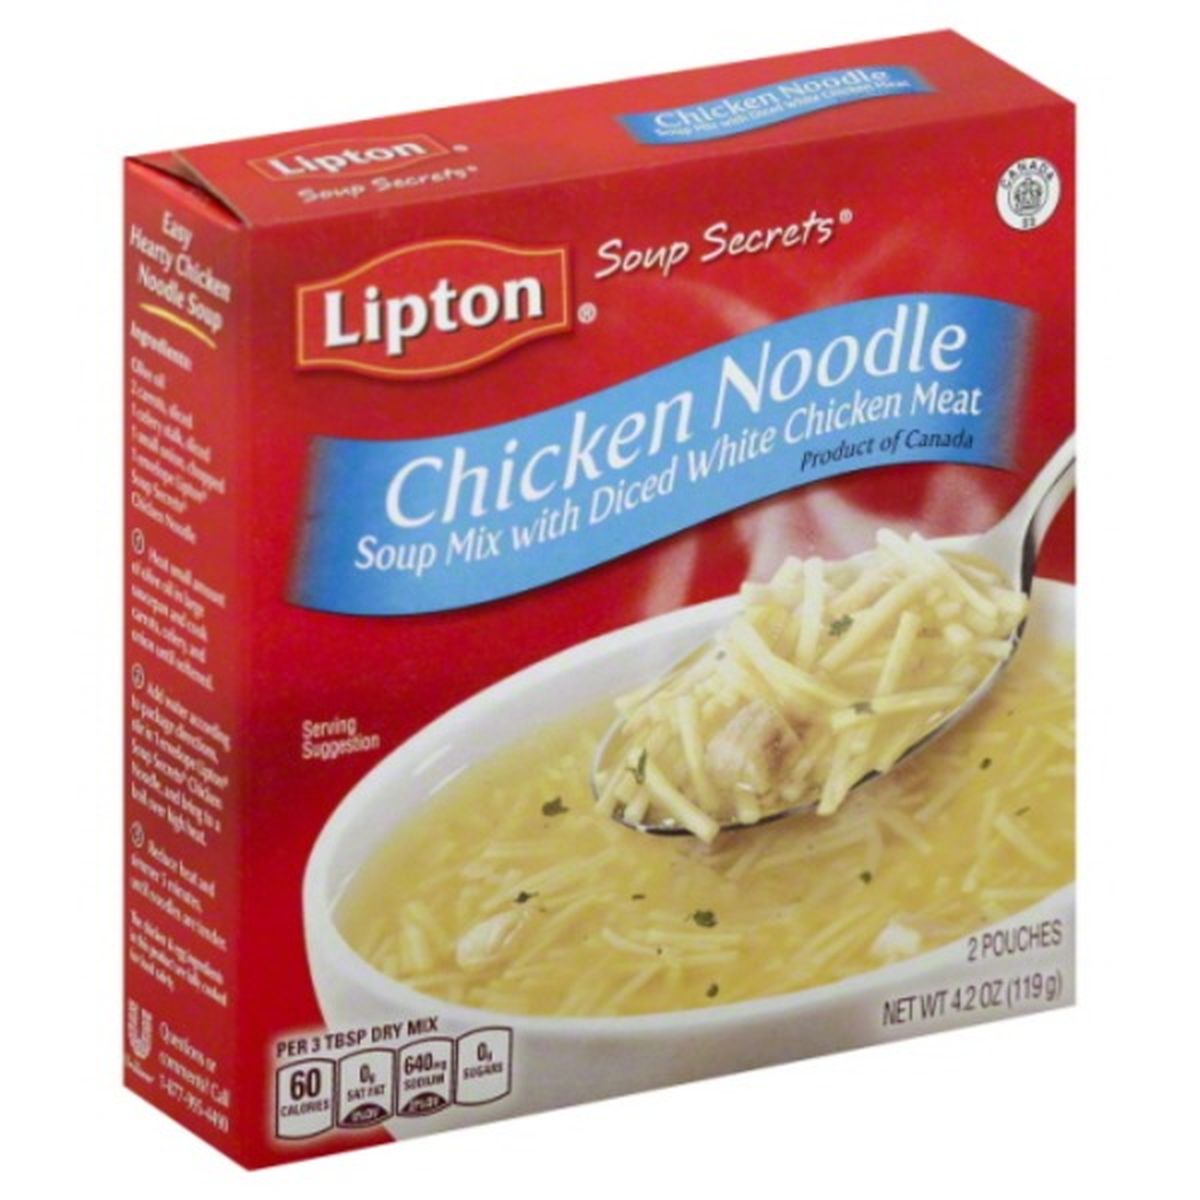 Calories in Lipton Soup Secrets Soup Mix, Chicken Noodle